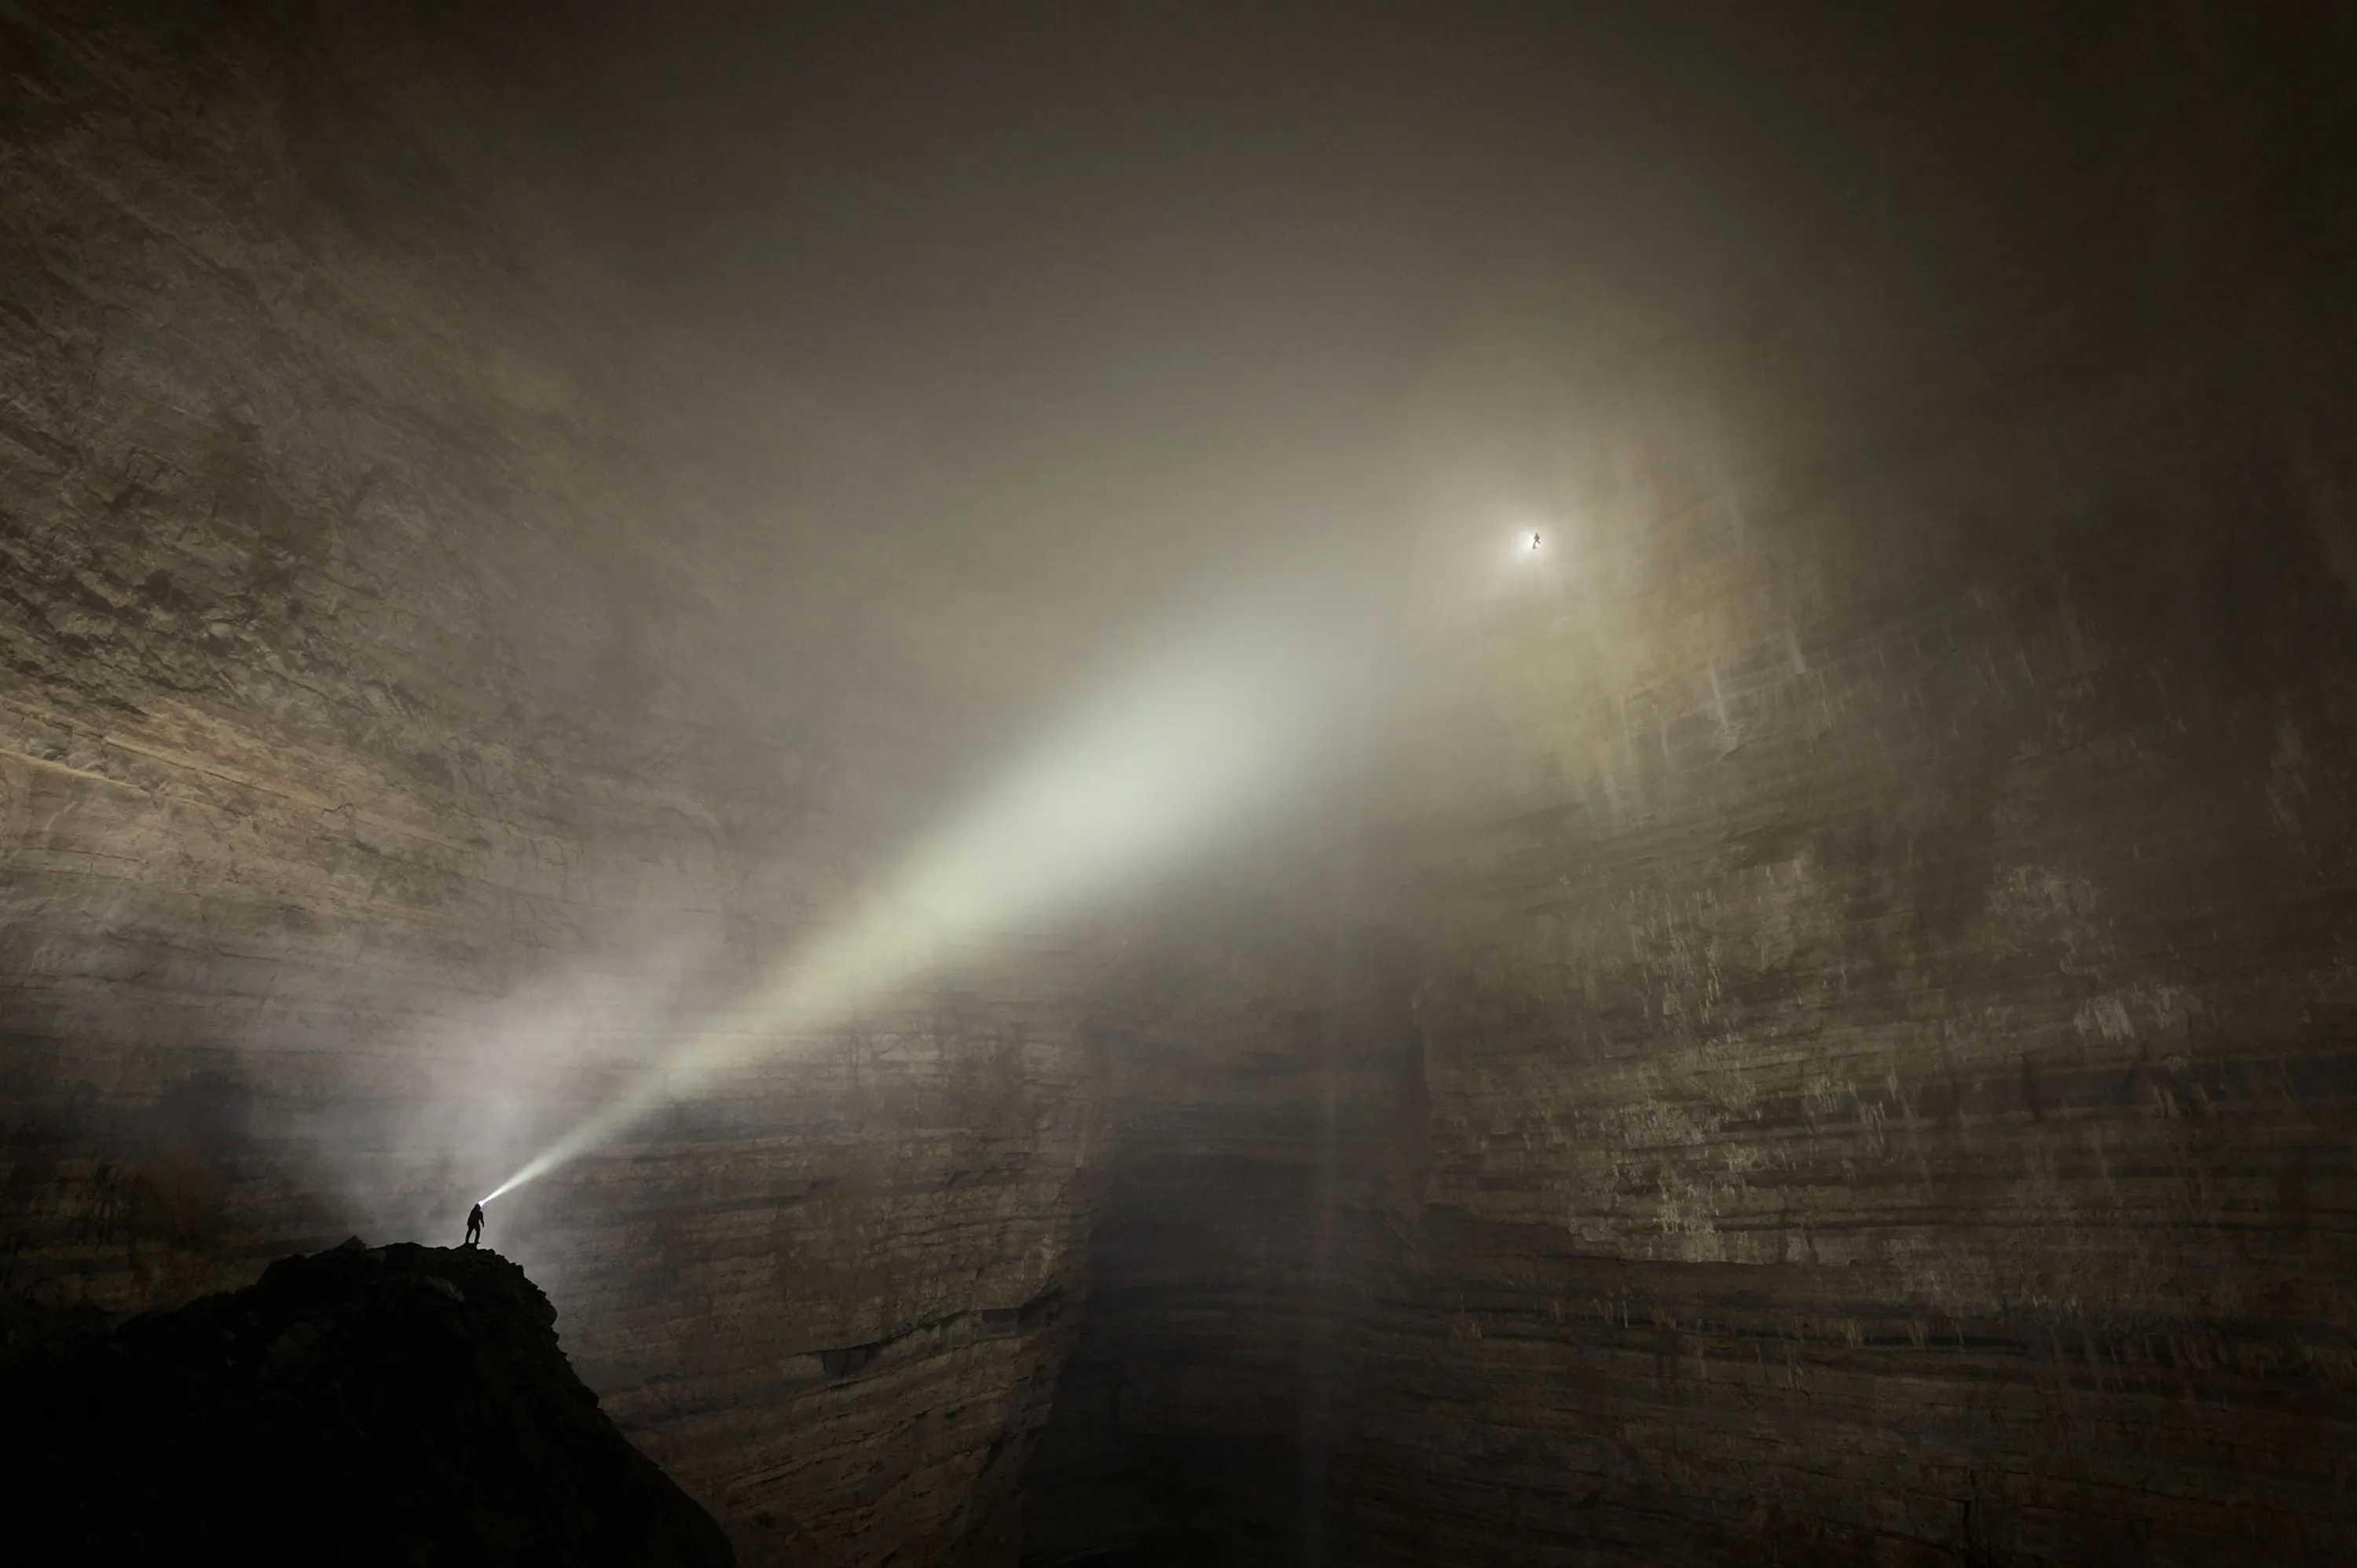 Появился луч света. Пещера Эр Ван Донг. Пещера Эр Ван Донг в китайской провинции Чунцин. Робби Шон пещерный фотограф. Свет в пещере.